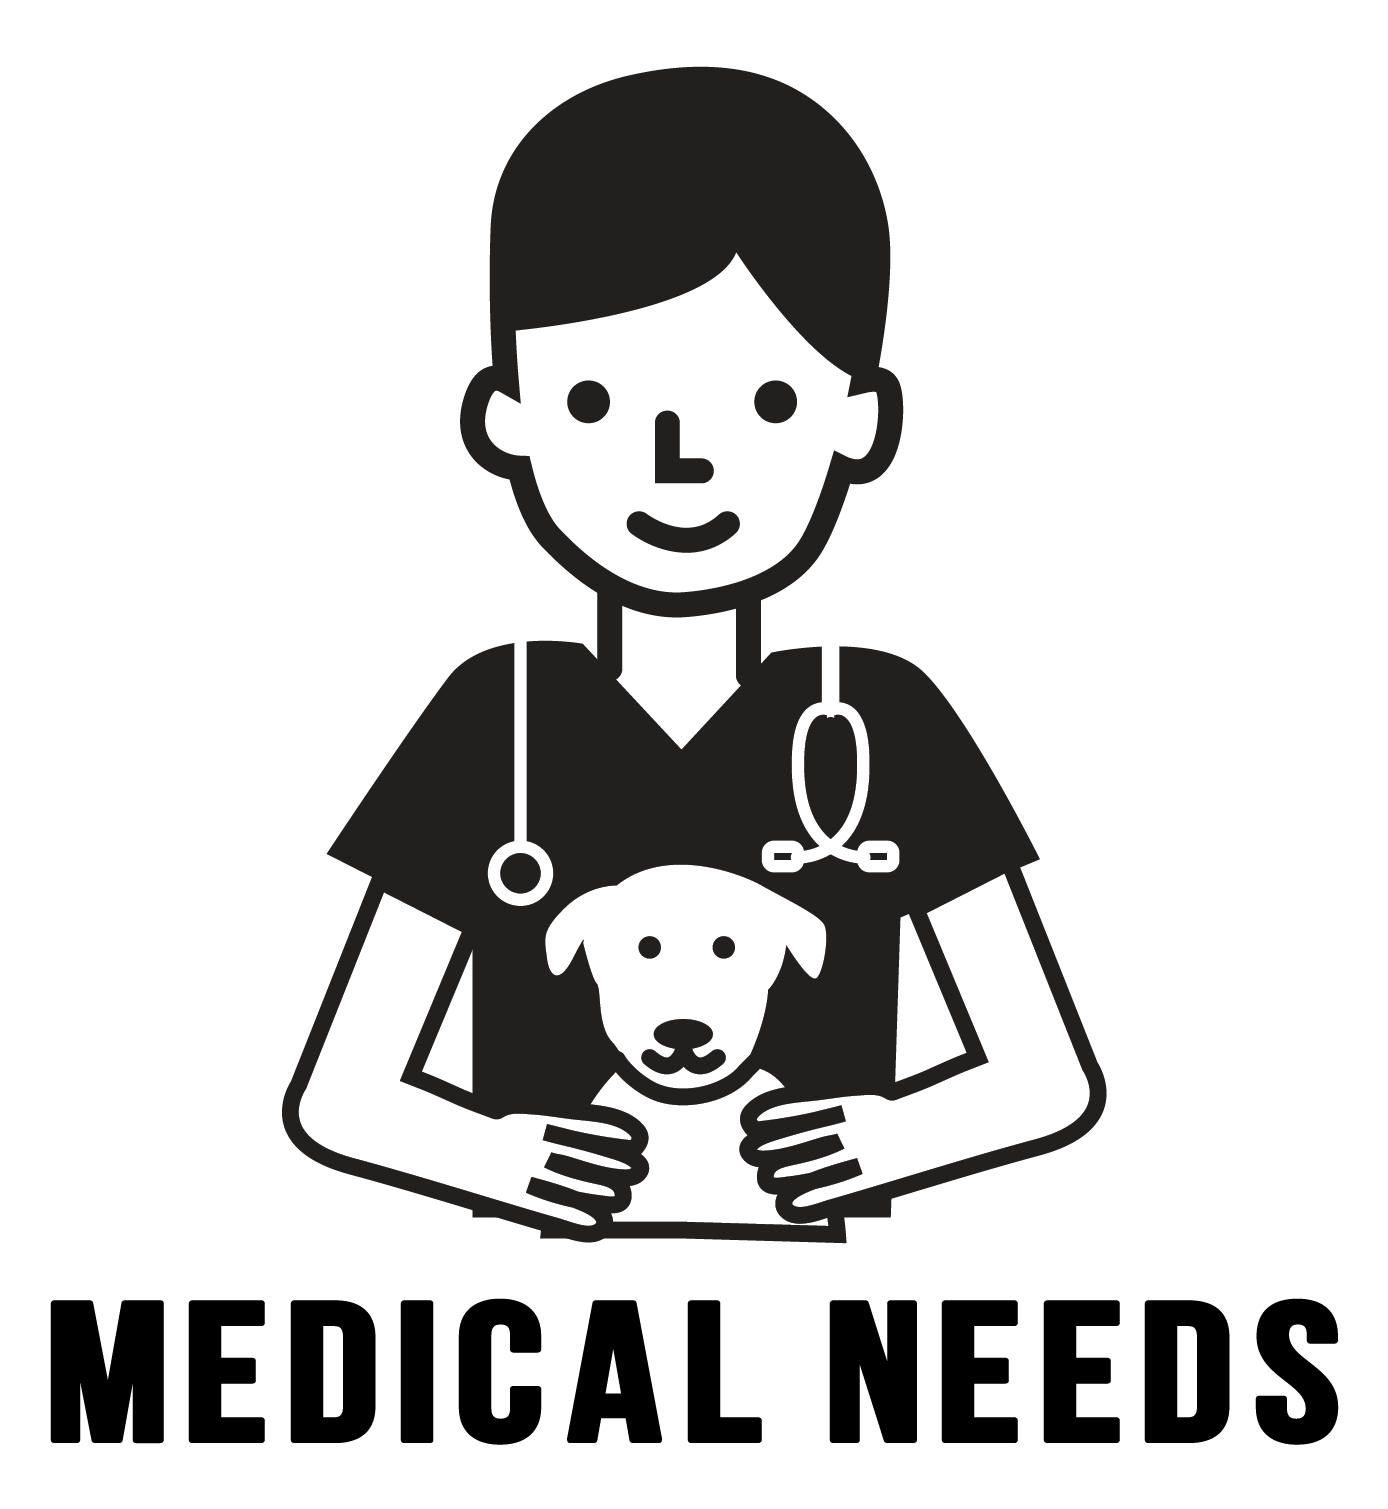 MedicalNeeds.png